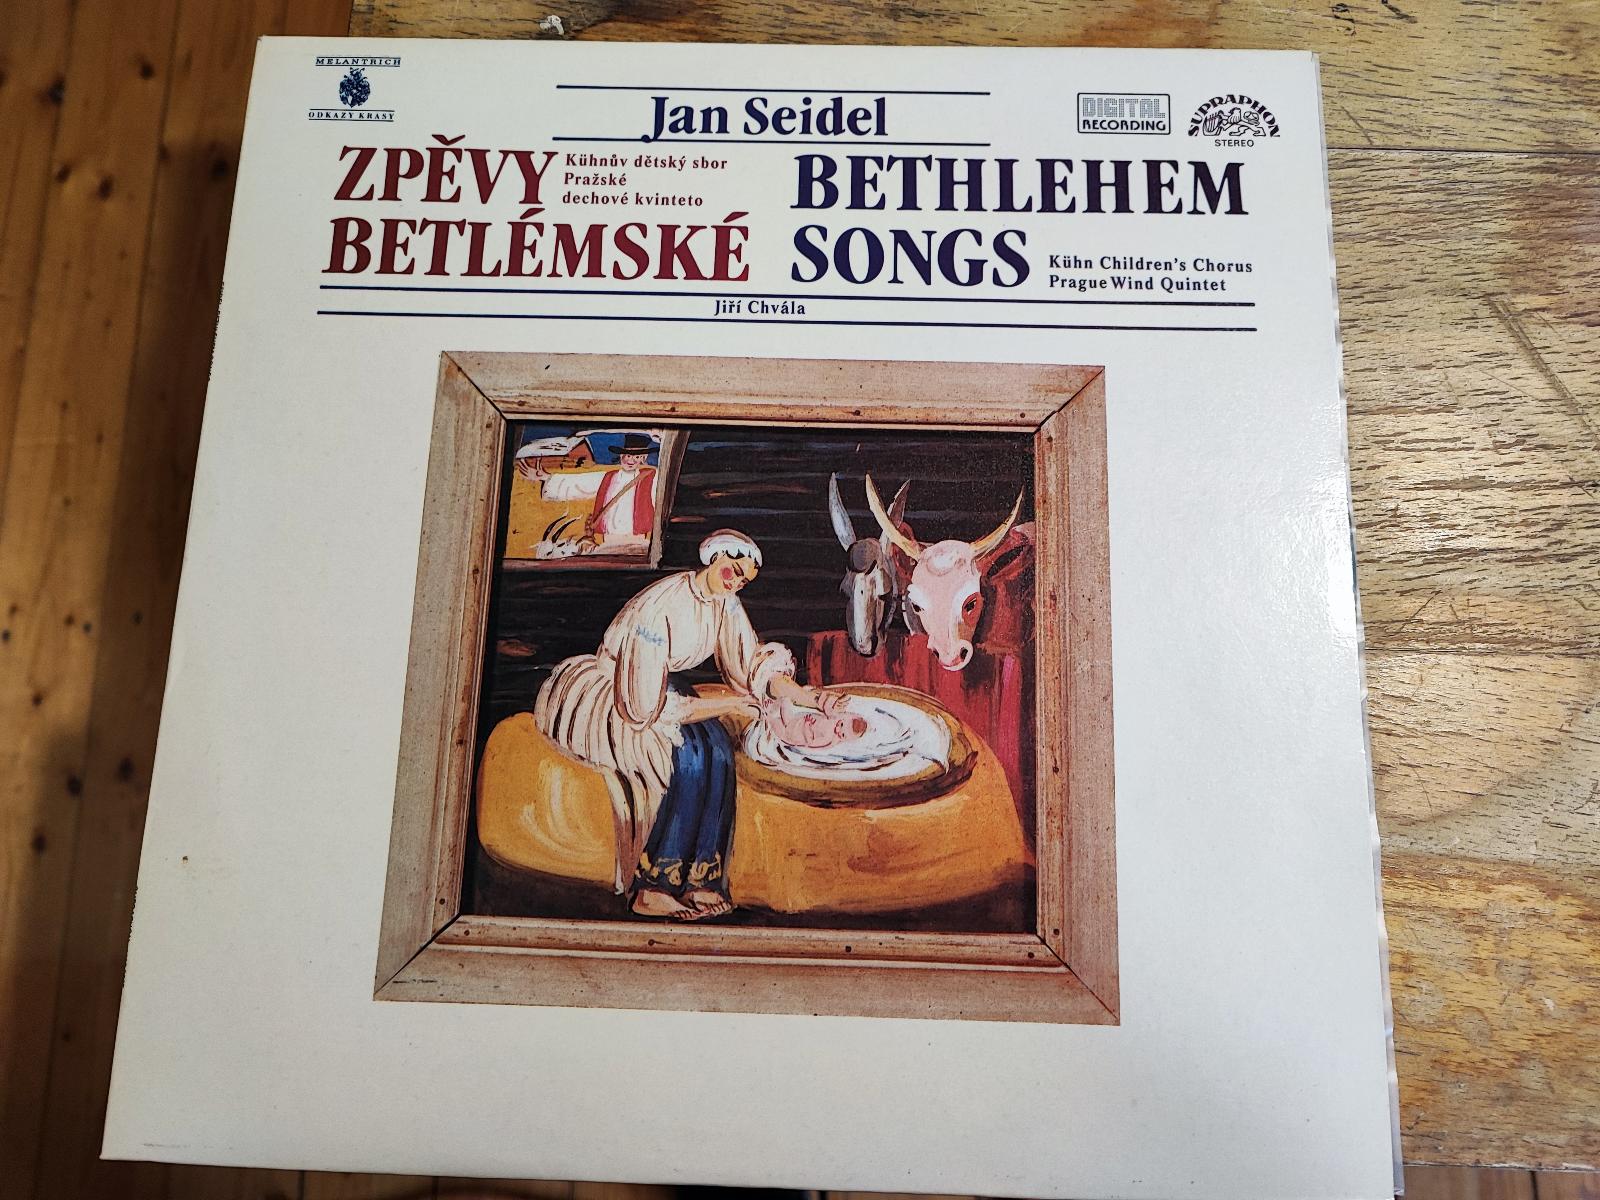 Betlémske spevy Ján Seidel, Kühnov Detský Zbor, 1986, LP, vinyl - Hudba